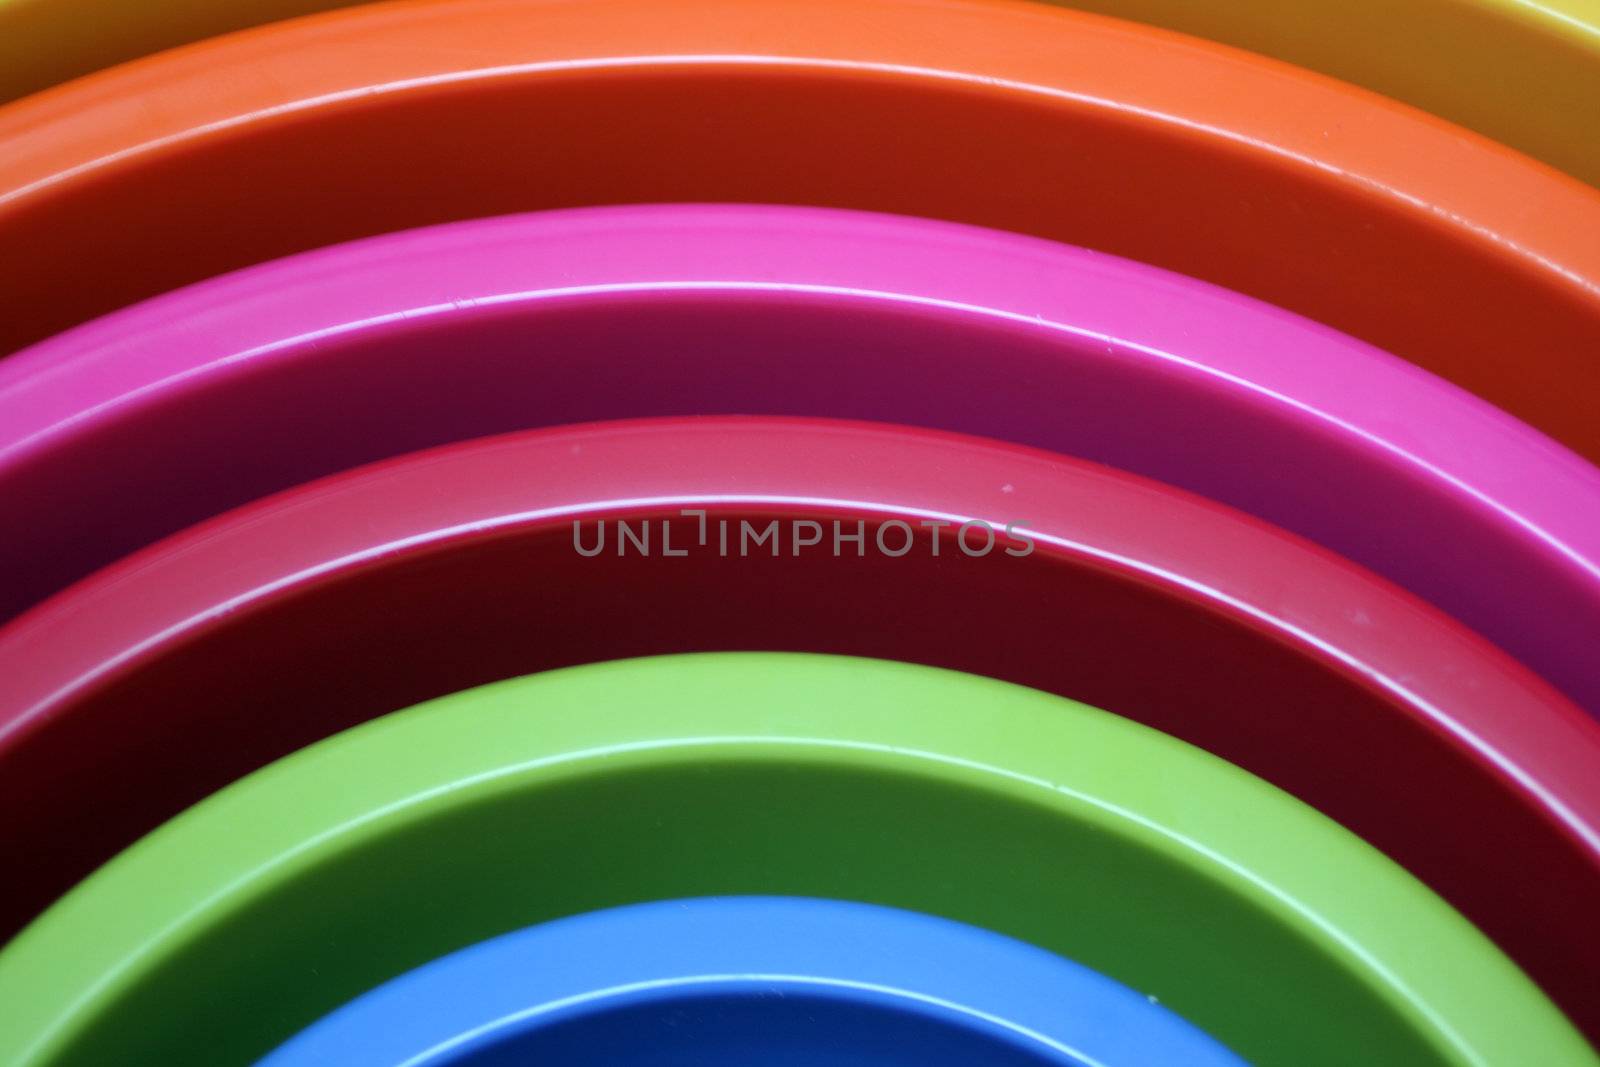 plastic bowls by keki